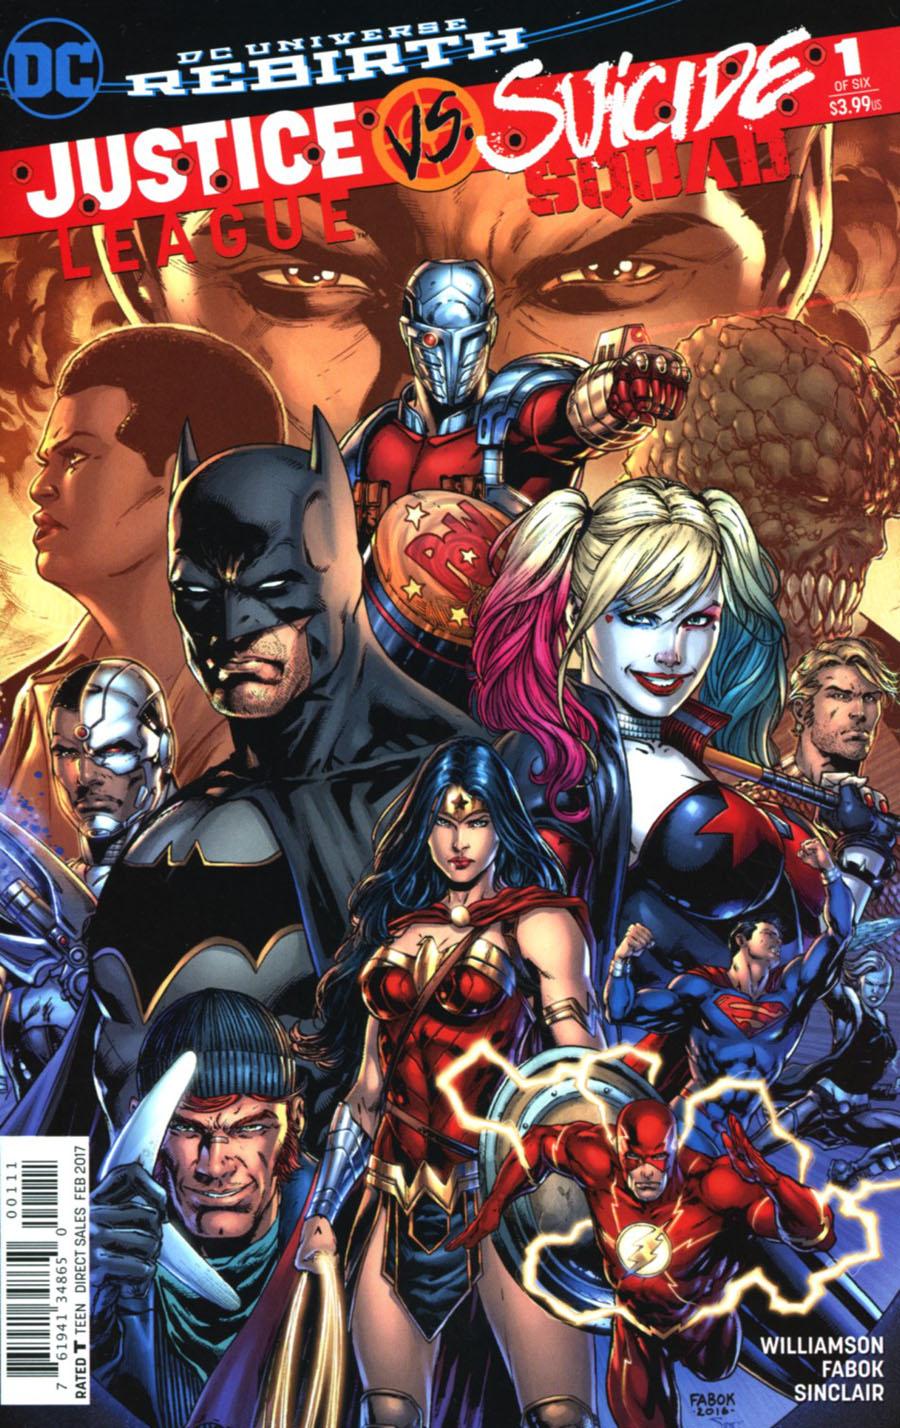 Justice League vs Suicide Squad Vol. 1 #1